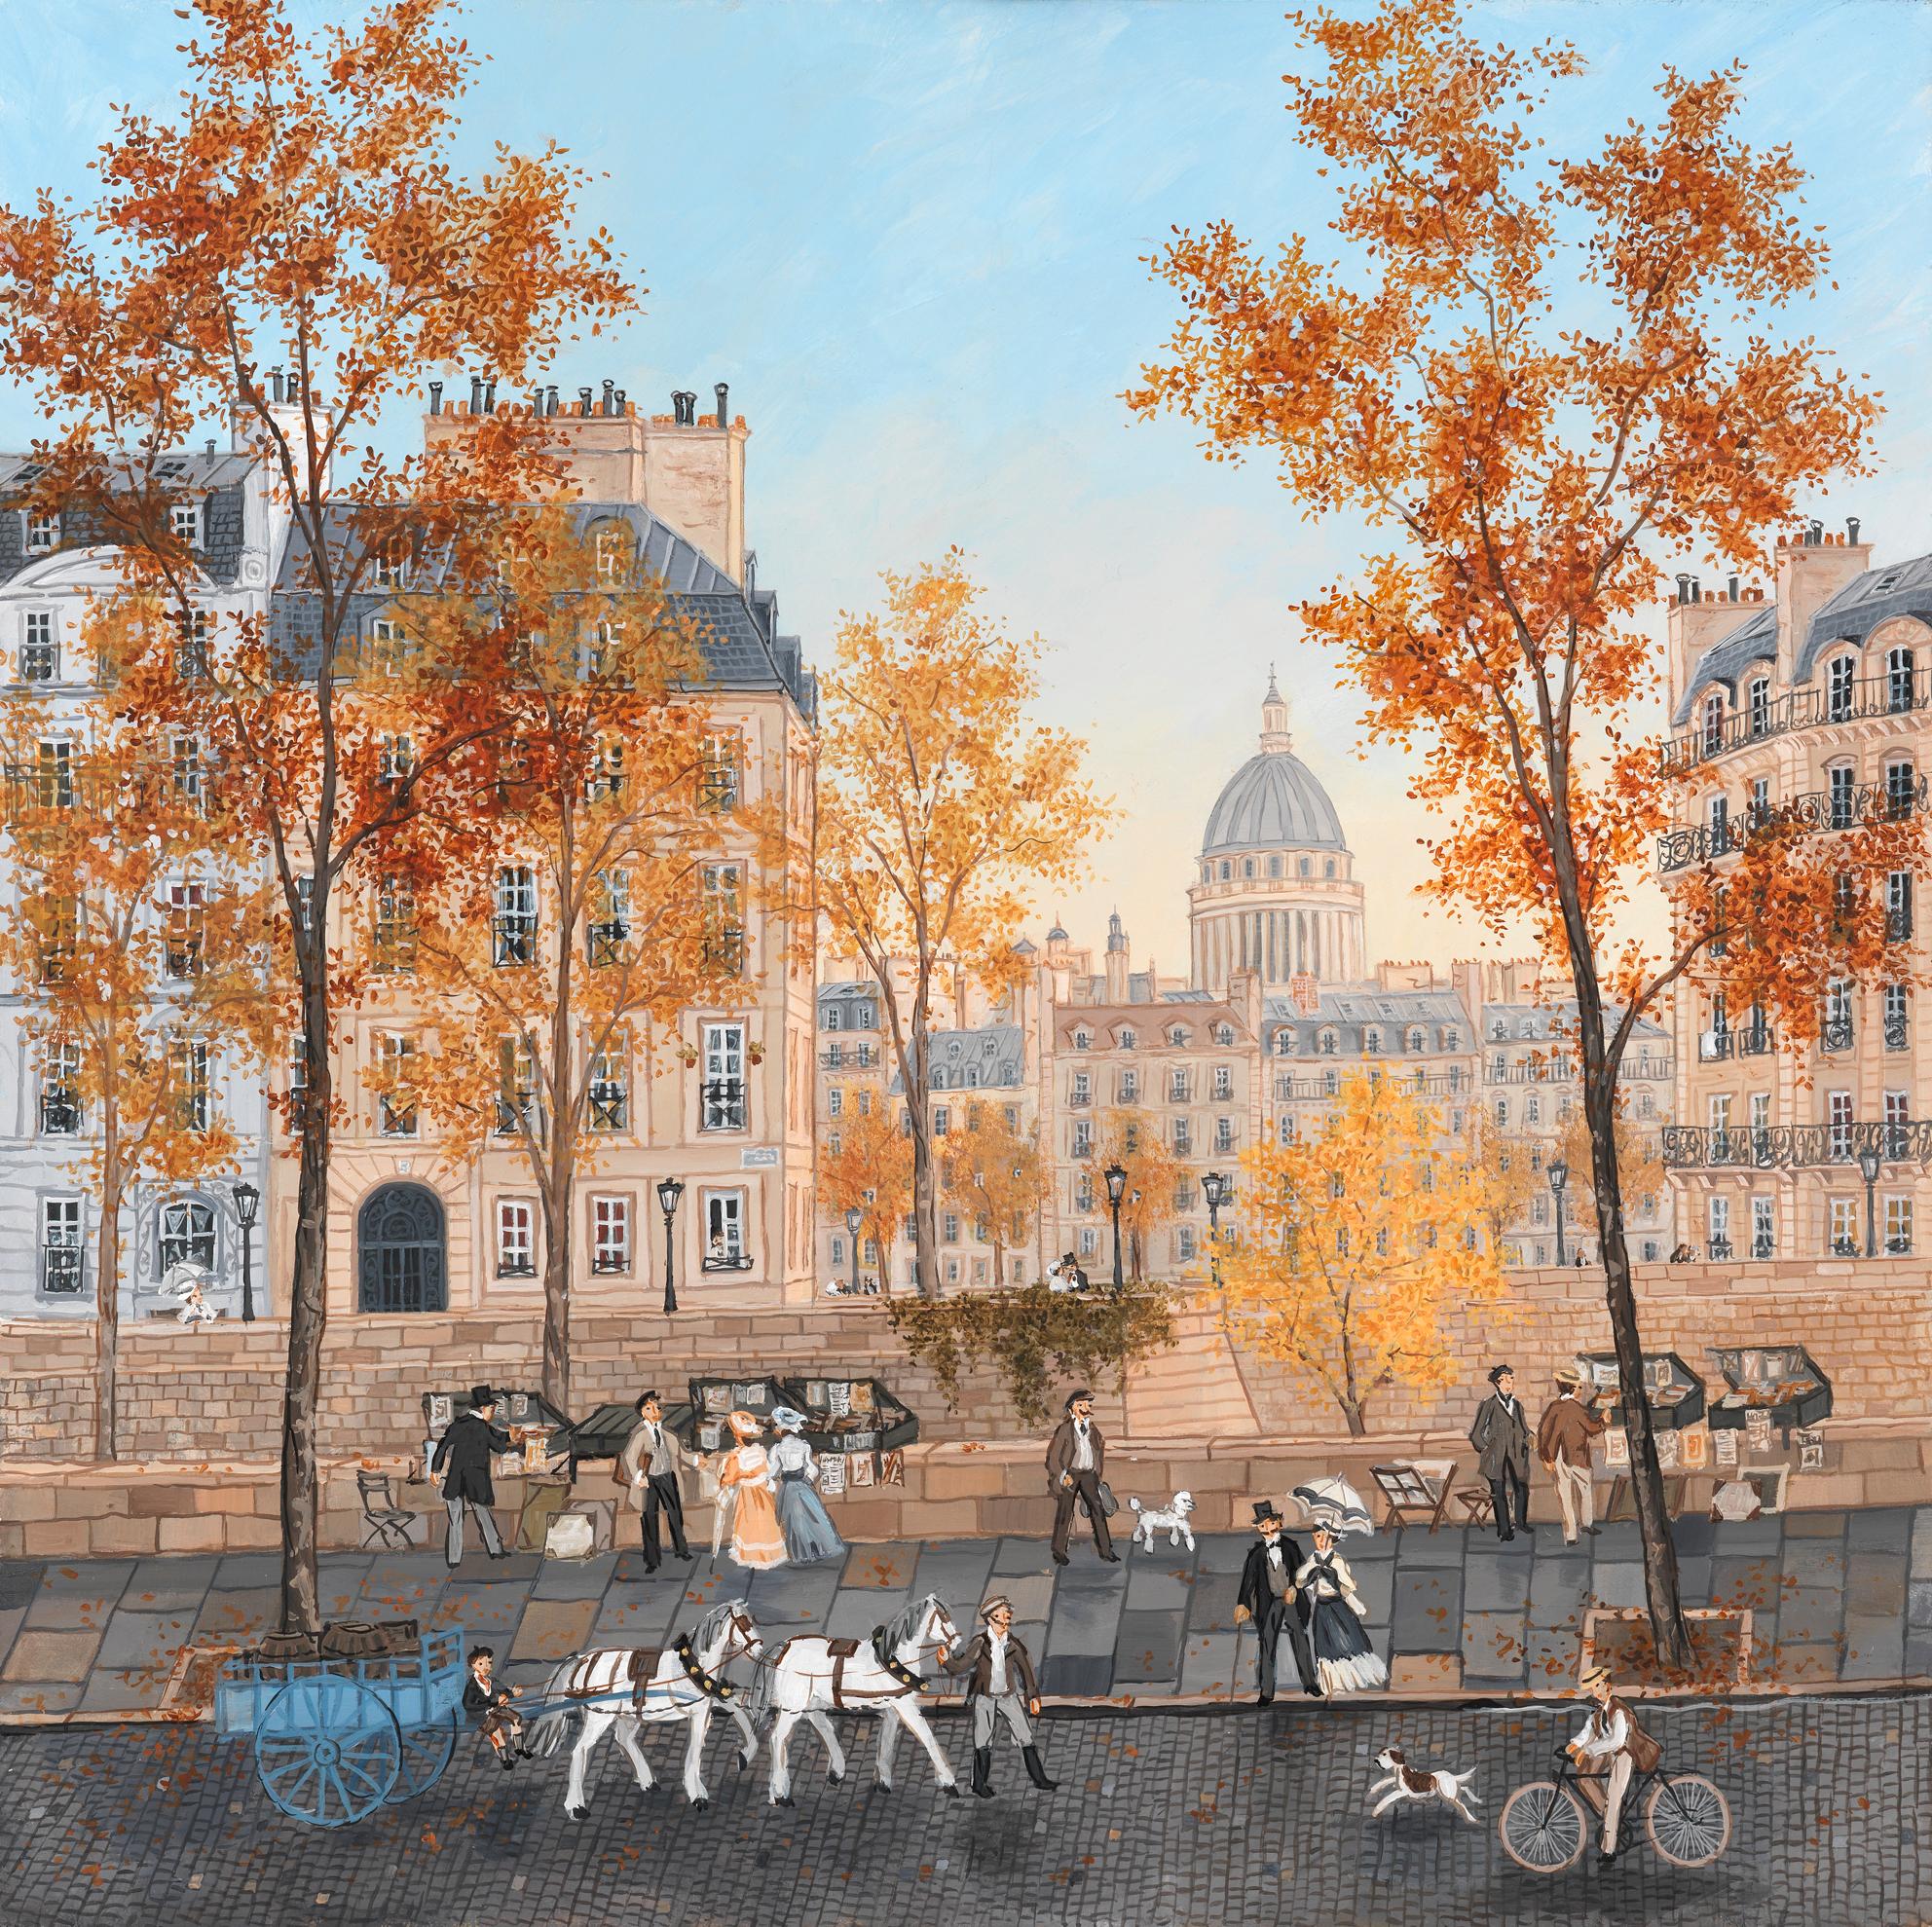 Quai de l'hôtel de ville - Painting by Fabienne Delacroix